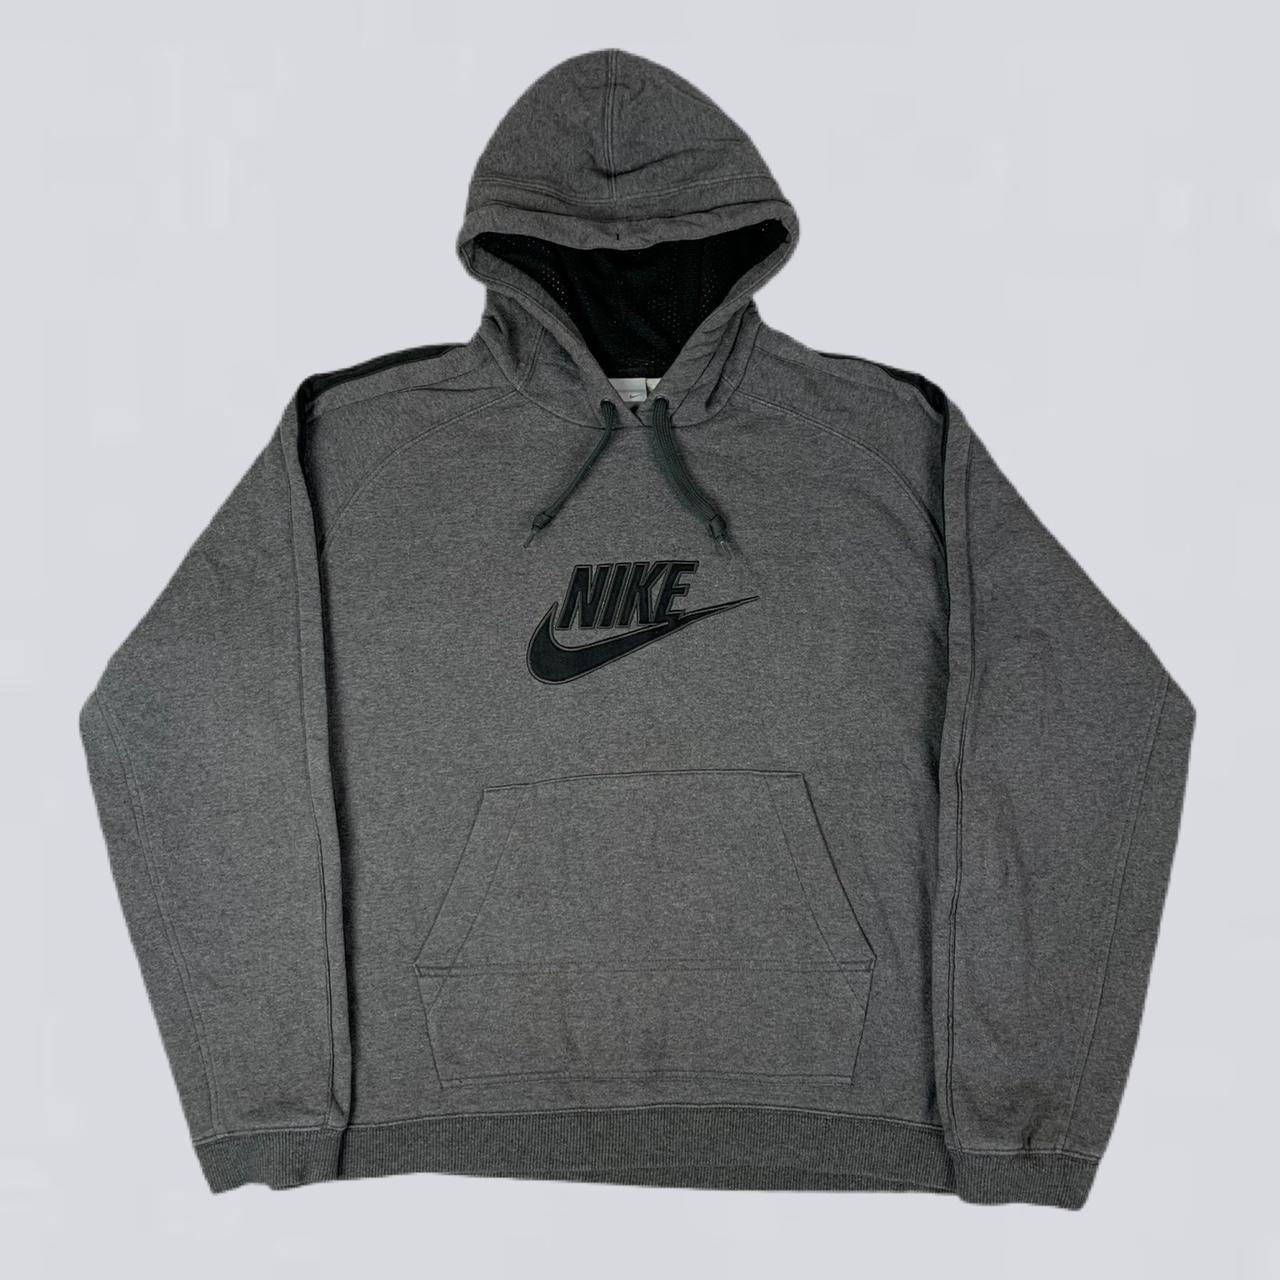 Nike Men's Grey and Black Hoodie | Depop